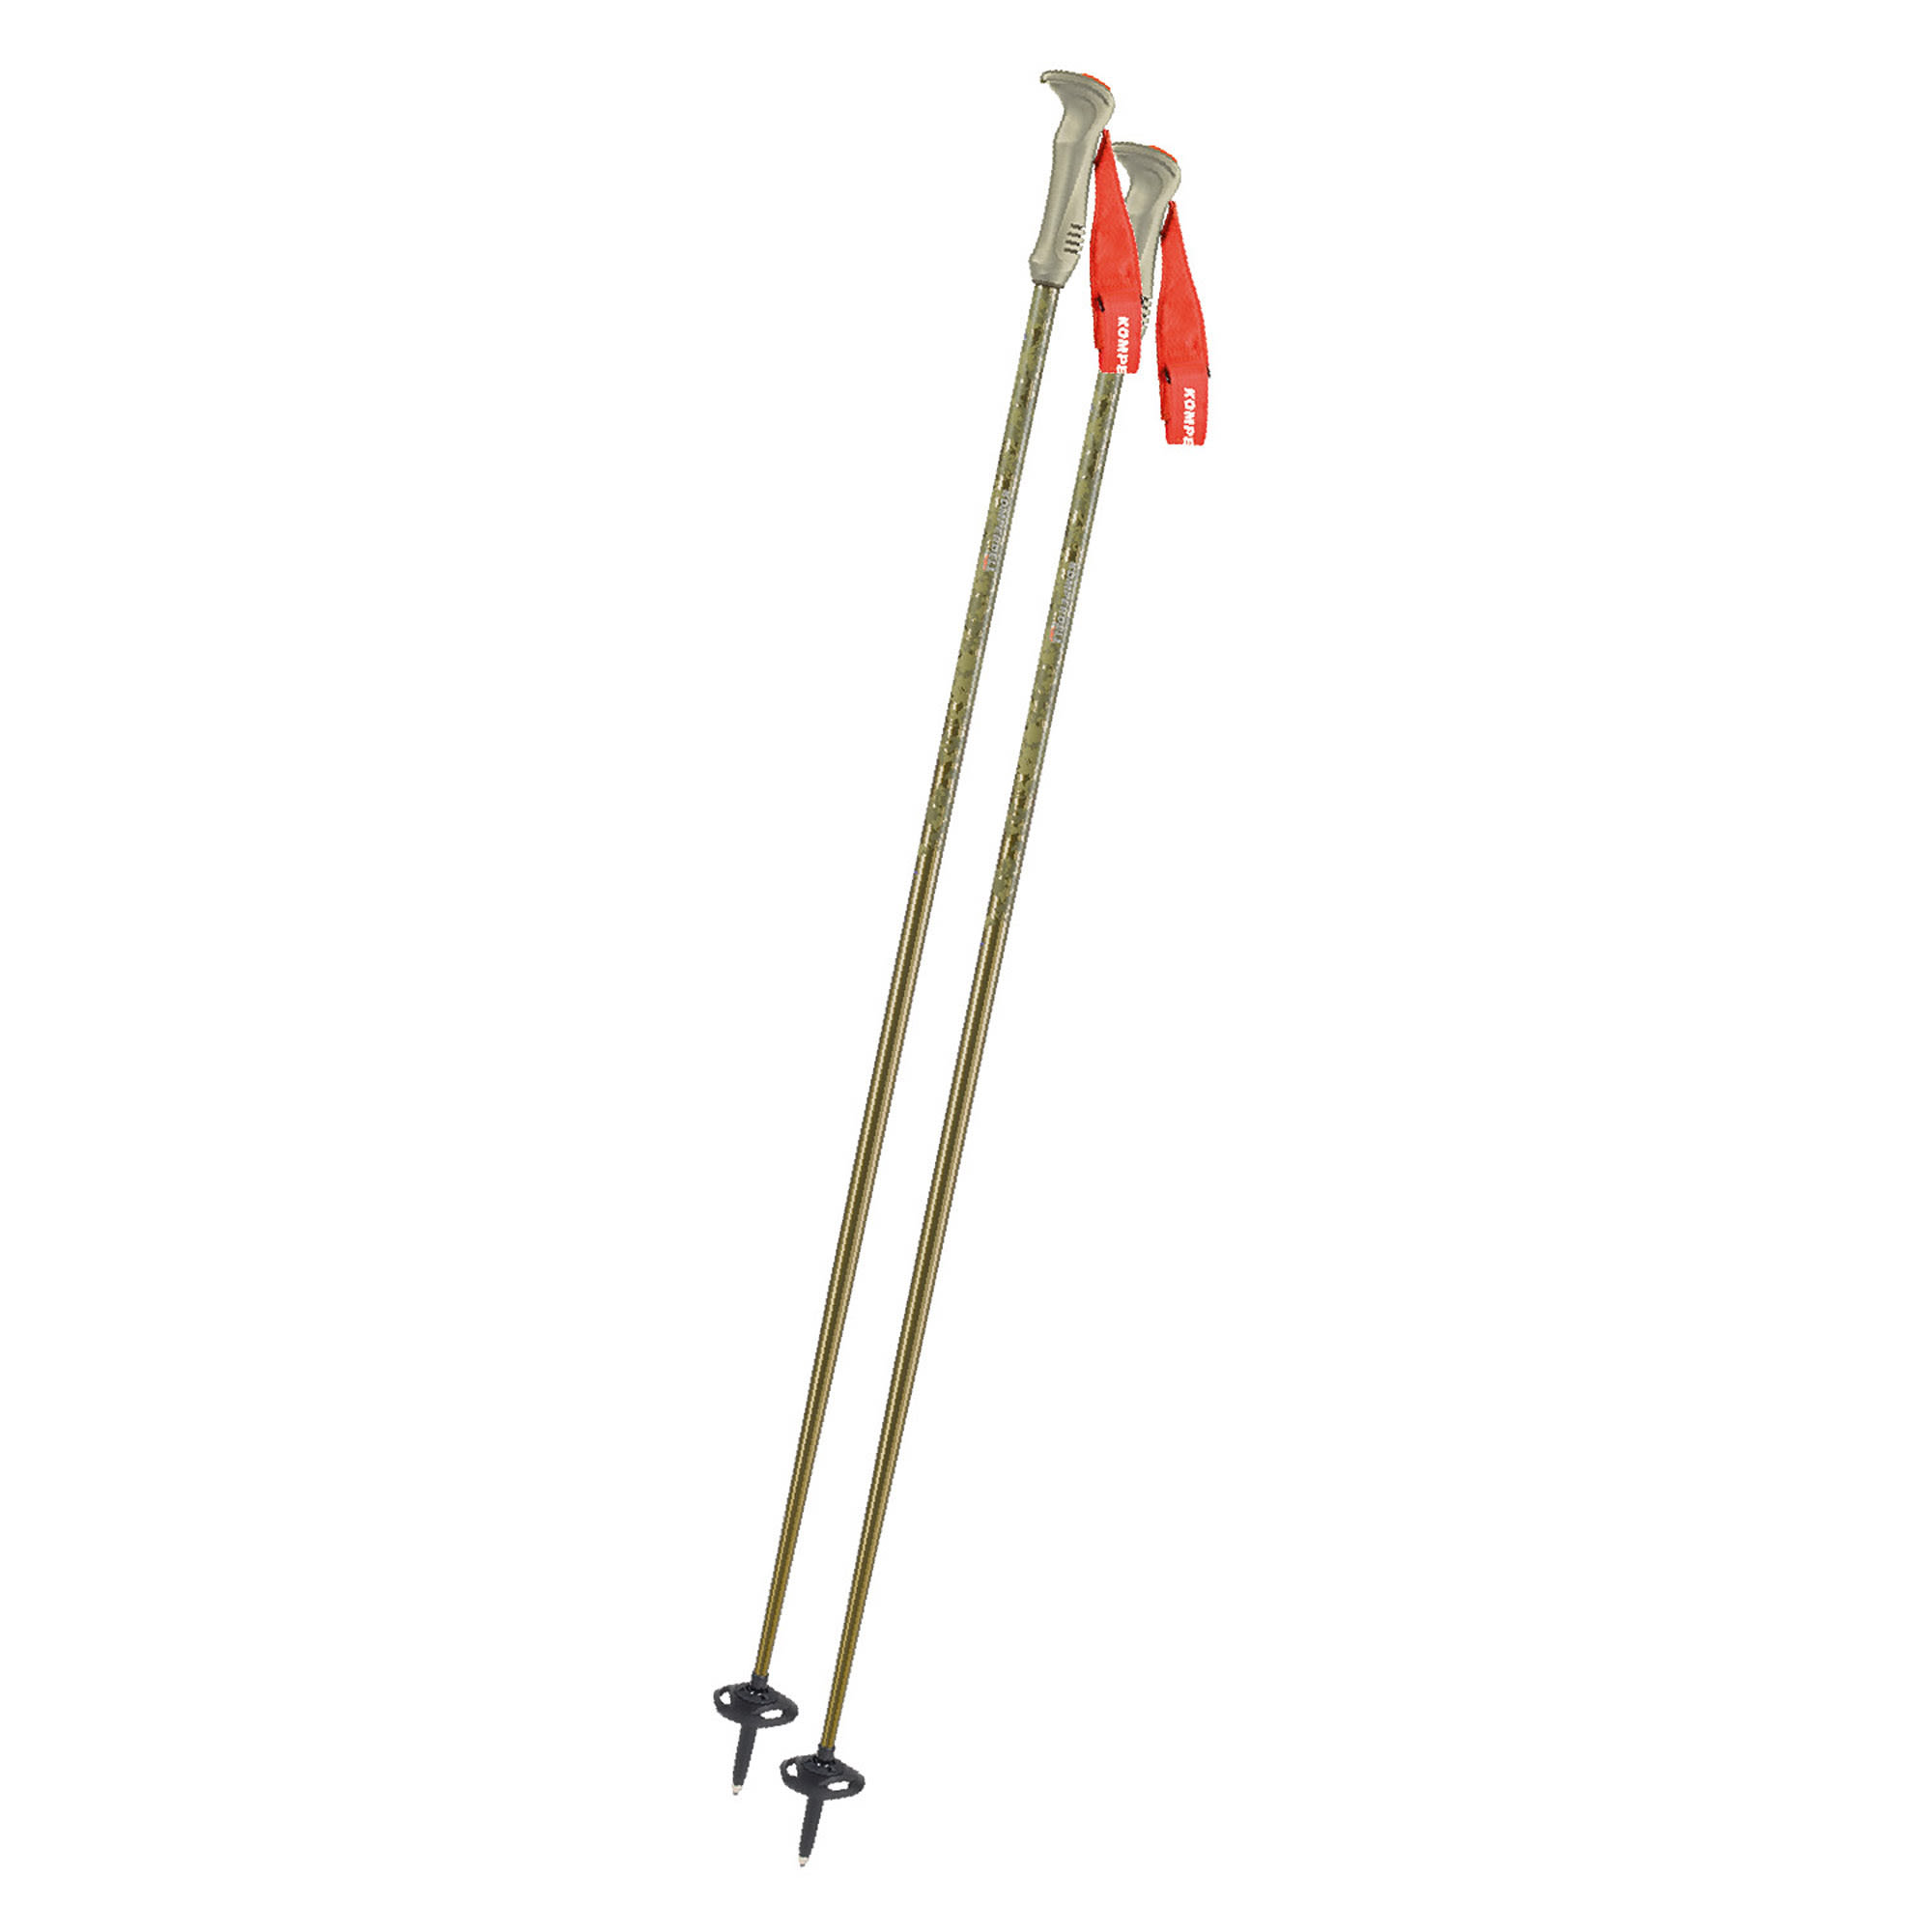 Komperdell Descent Ti Braun | Größe 115 cm |  Ski- & Tourenstock